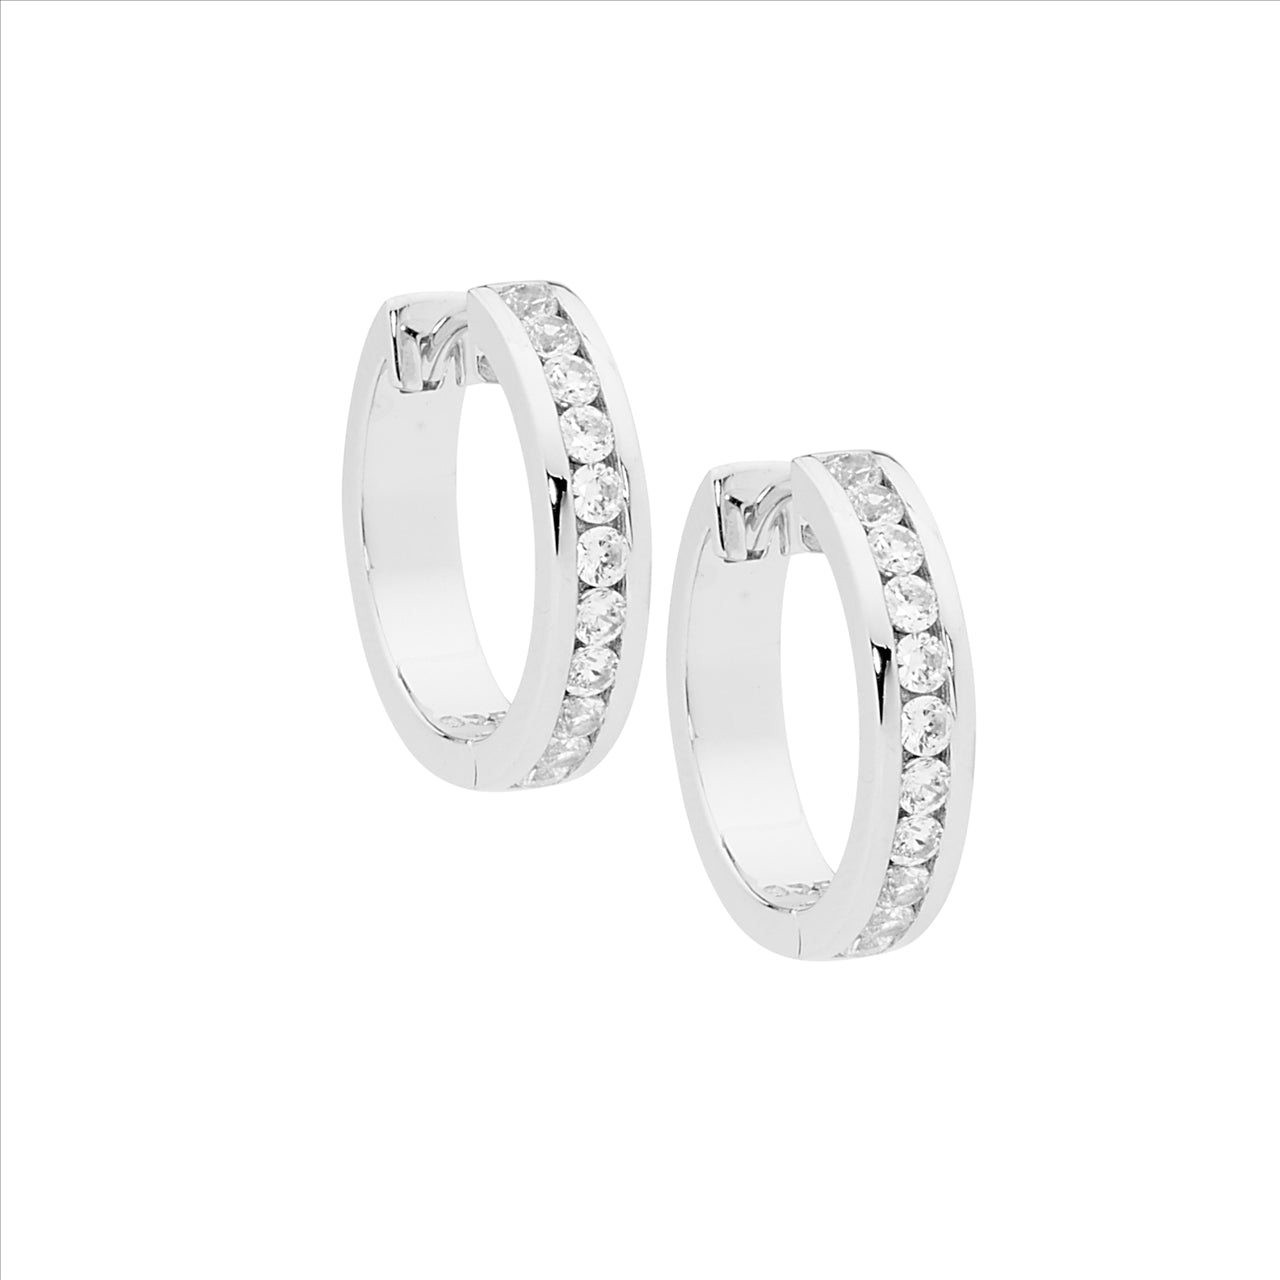 Ellani Sterling Silver White Cubic Zirconium Hoop Earrings